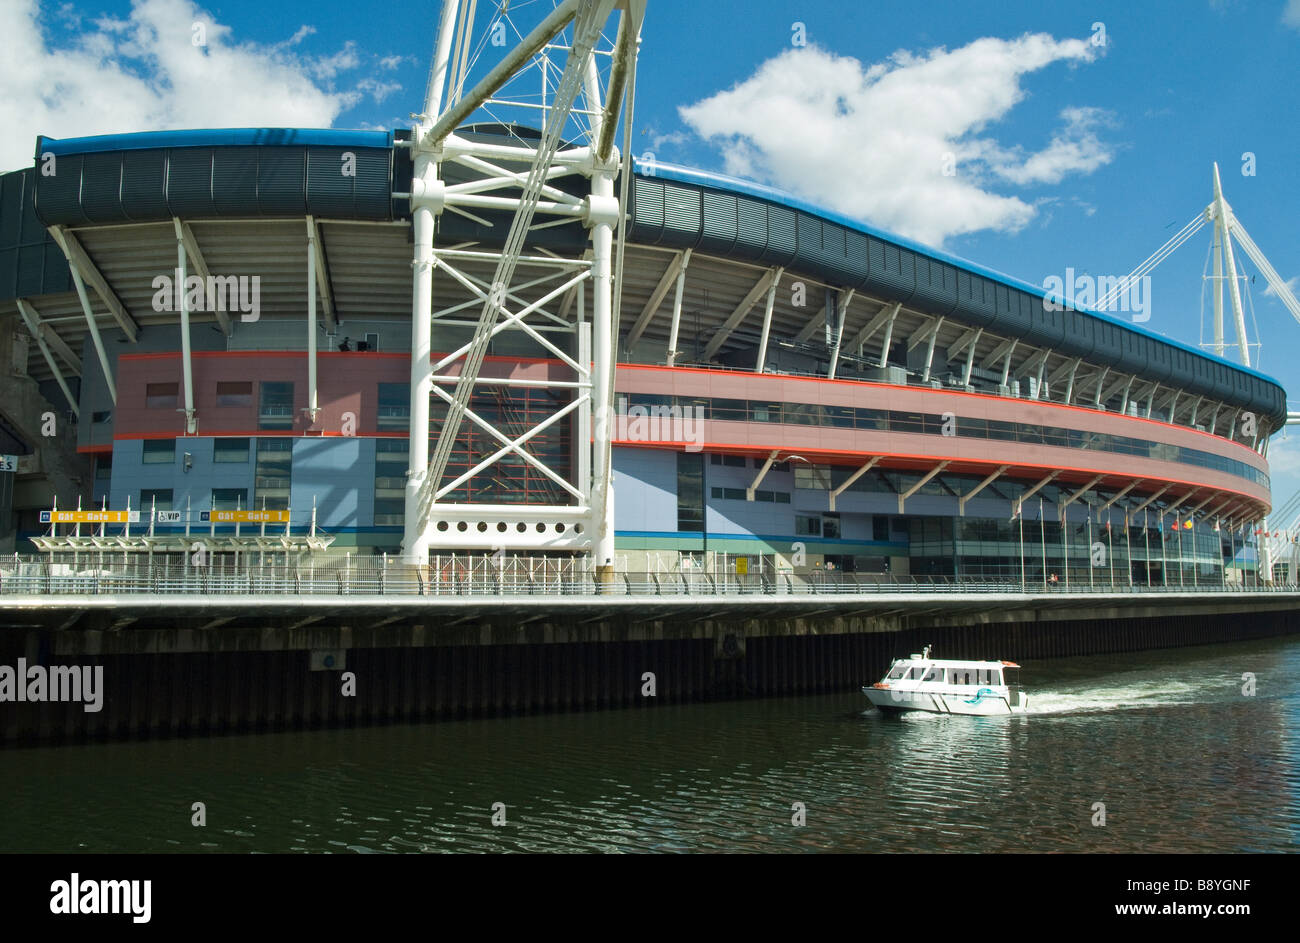 Wales Millennium Stadium di Cardiff sulle rive del fiume Taff, mostrando una barca fluviale o river bus Foto Stock